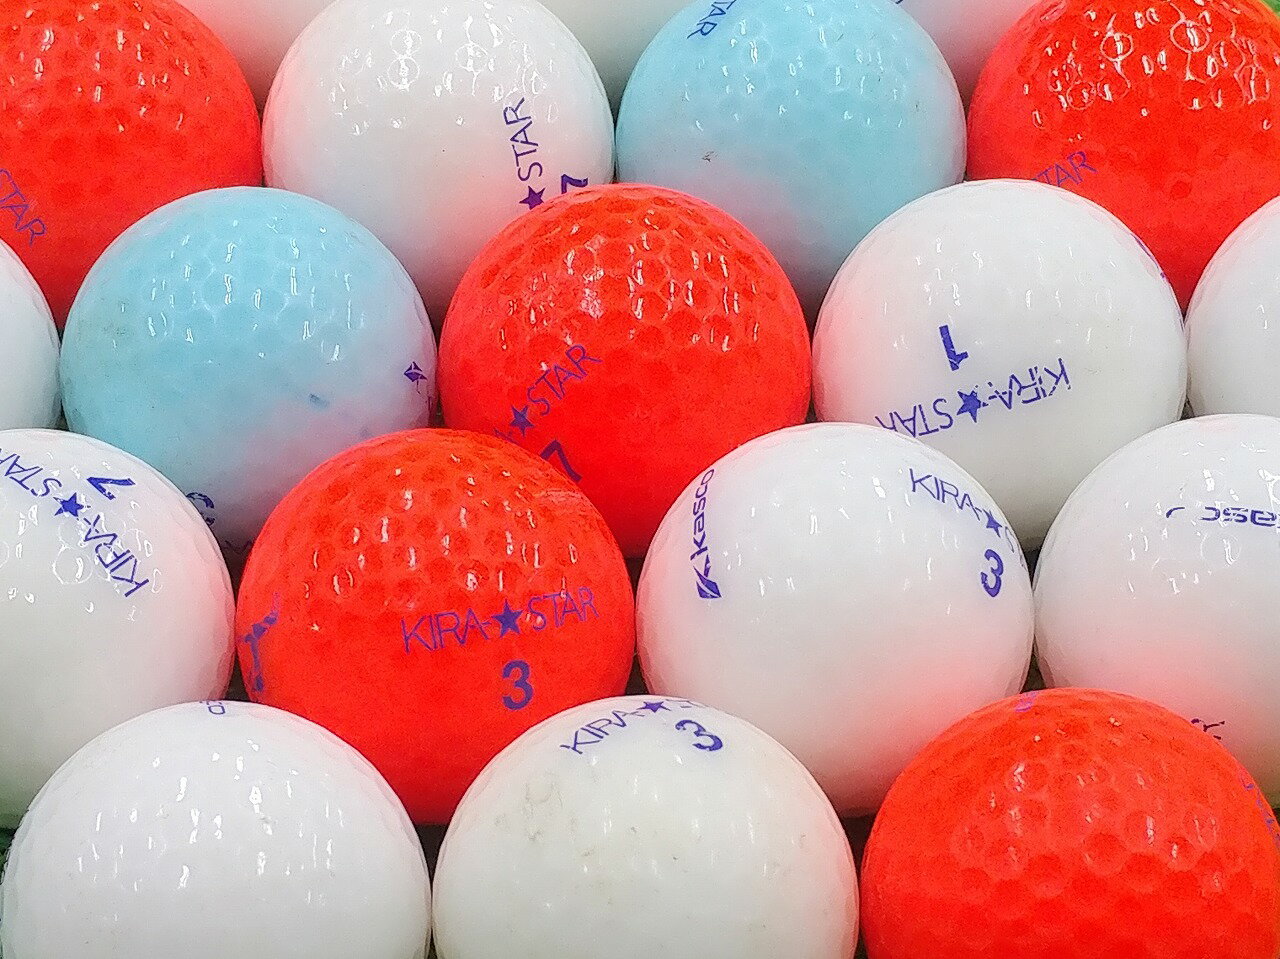 【中古】【Bランク】キャスコ KIRA★STAR 2015年モデル カラー混合 1個 ロストボール ゴルフボール